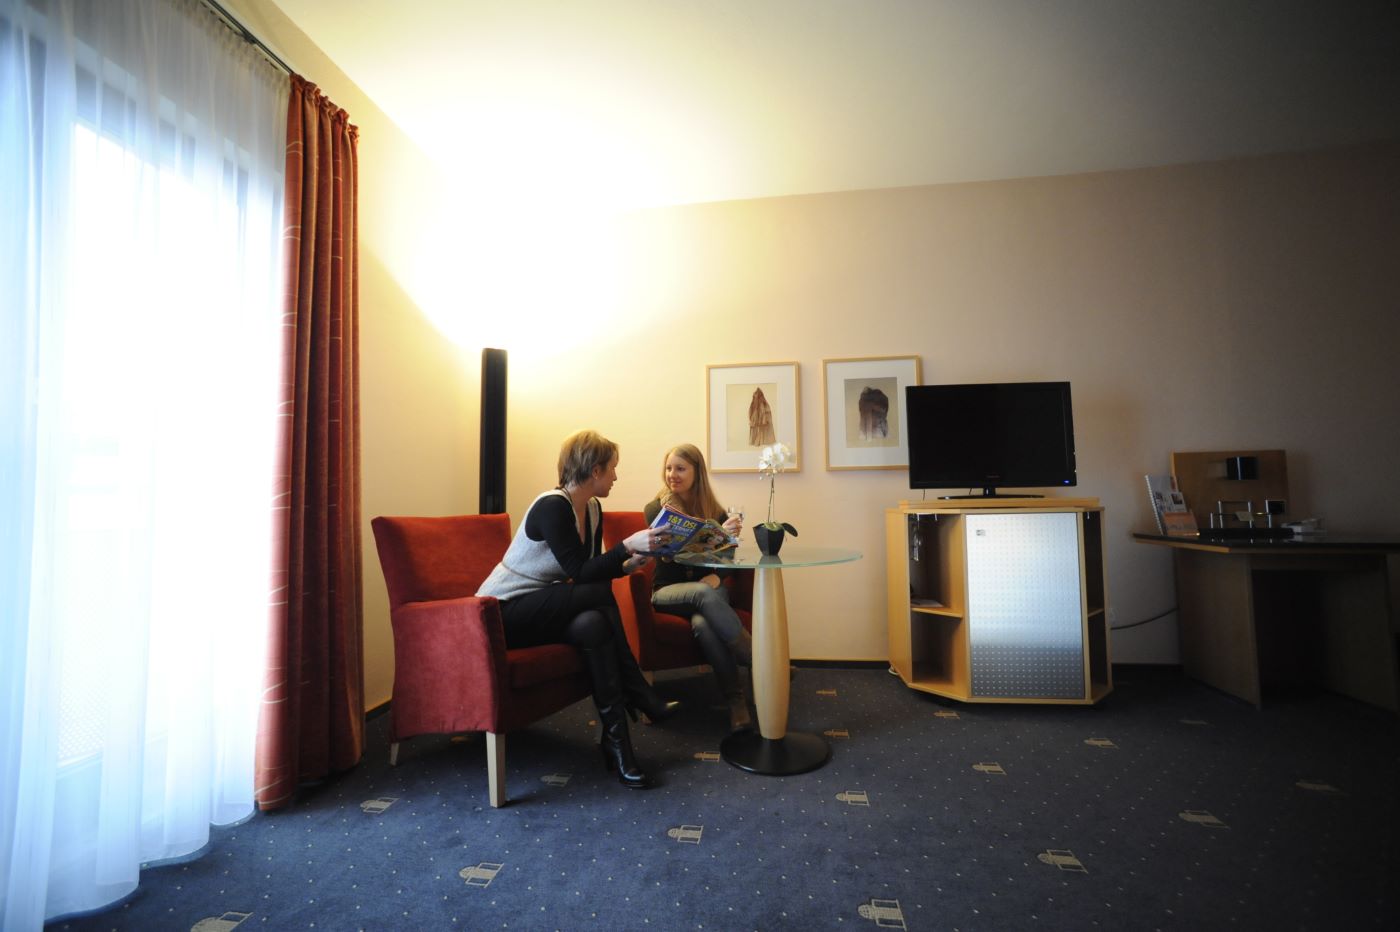 Zimmer der Kategorie Superior des Hotels Theresientor, Straubing